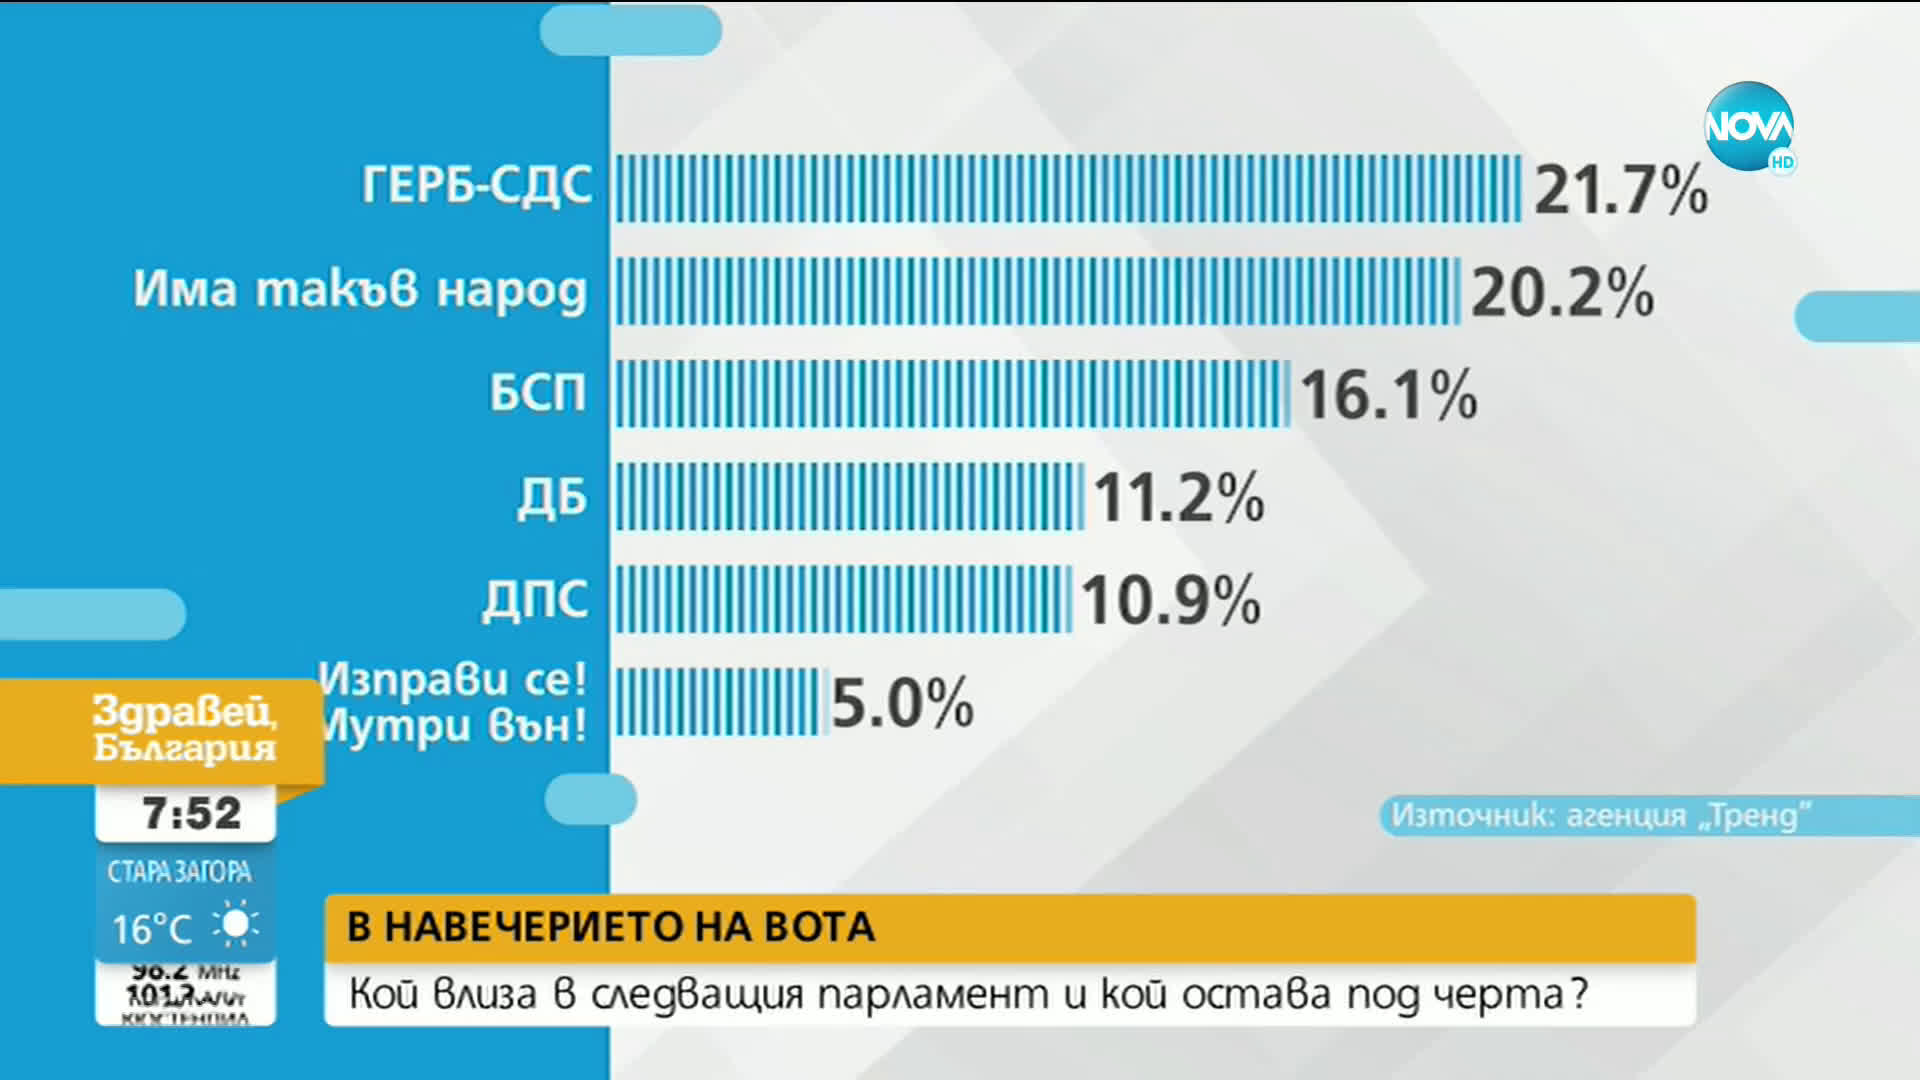 Разликата между ГЕРБ-СДС и "Има такъв народ" е 1,5%